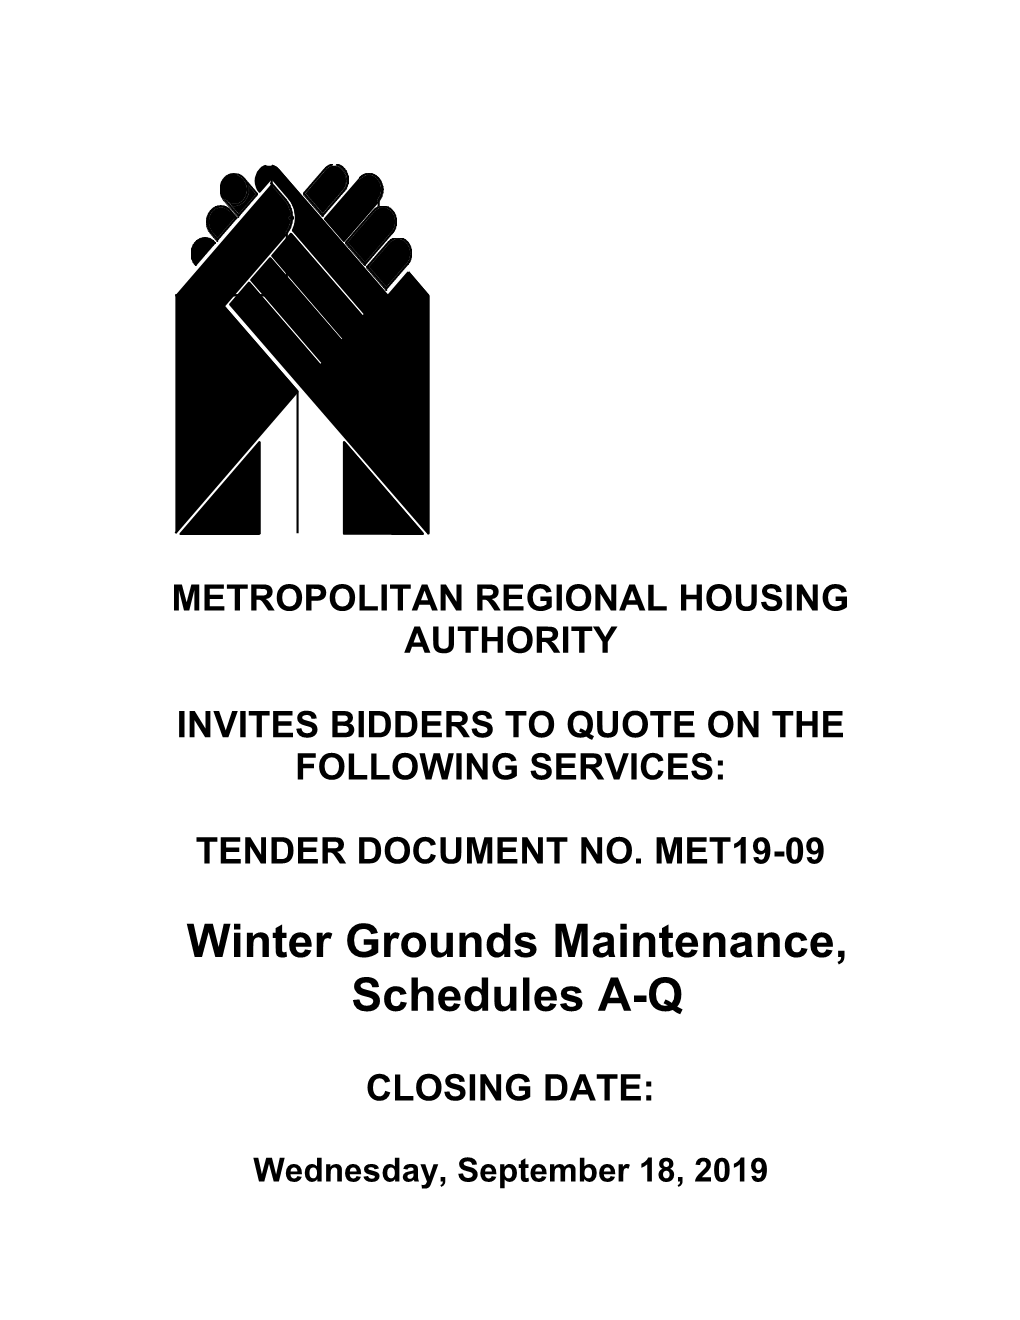 Winter Grounds Maintenance, Schedules A-Q